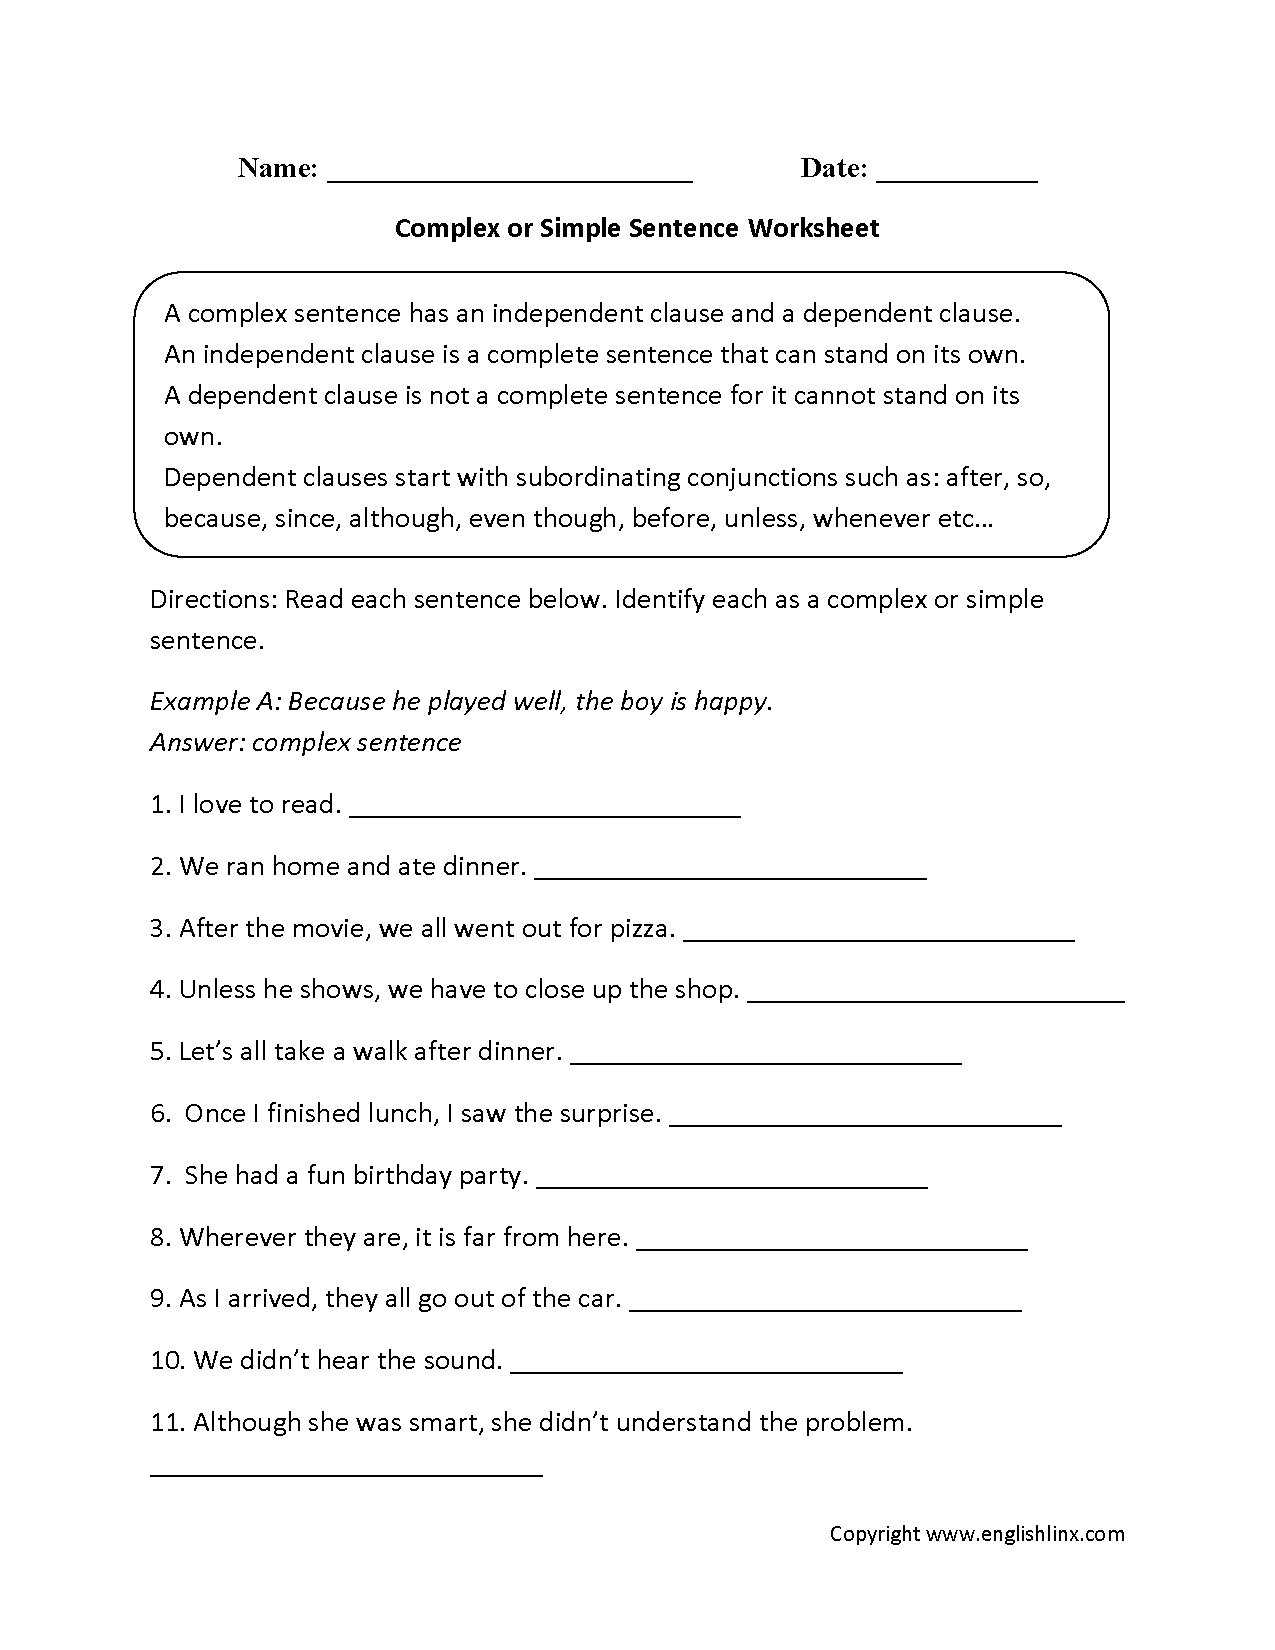 Complex Sentences Worksheets  Complex Or Simple Sentences